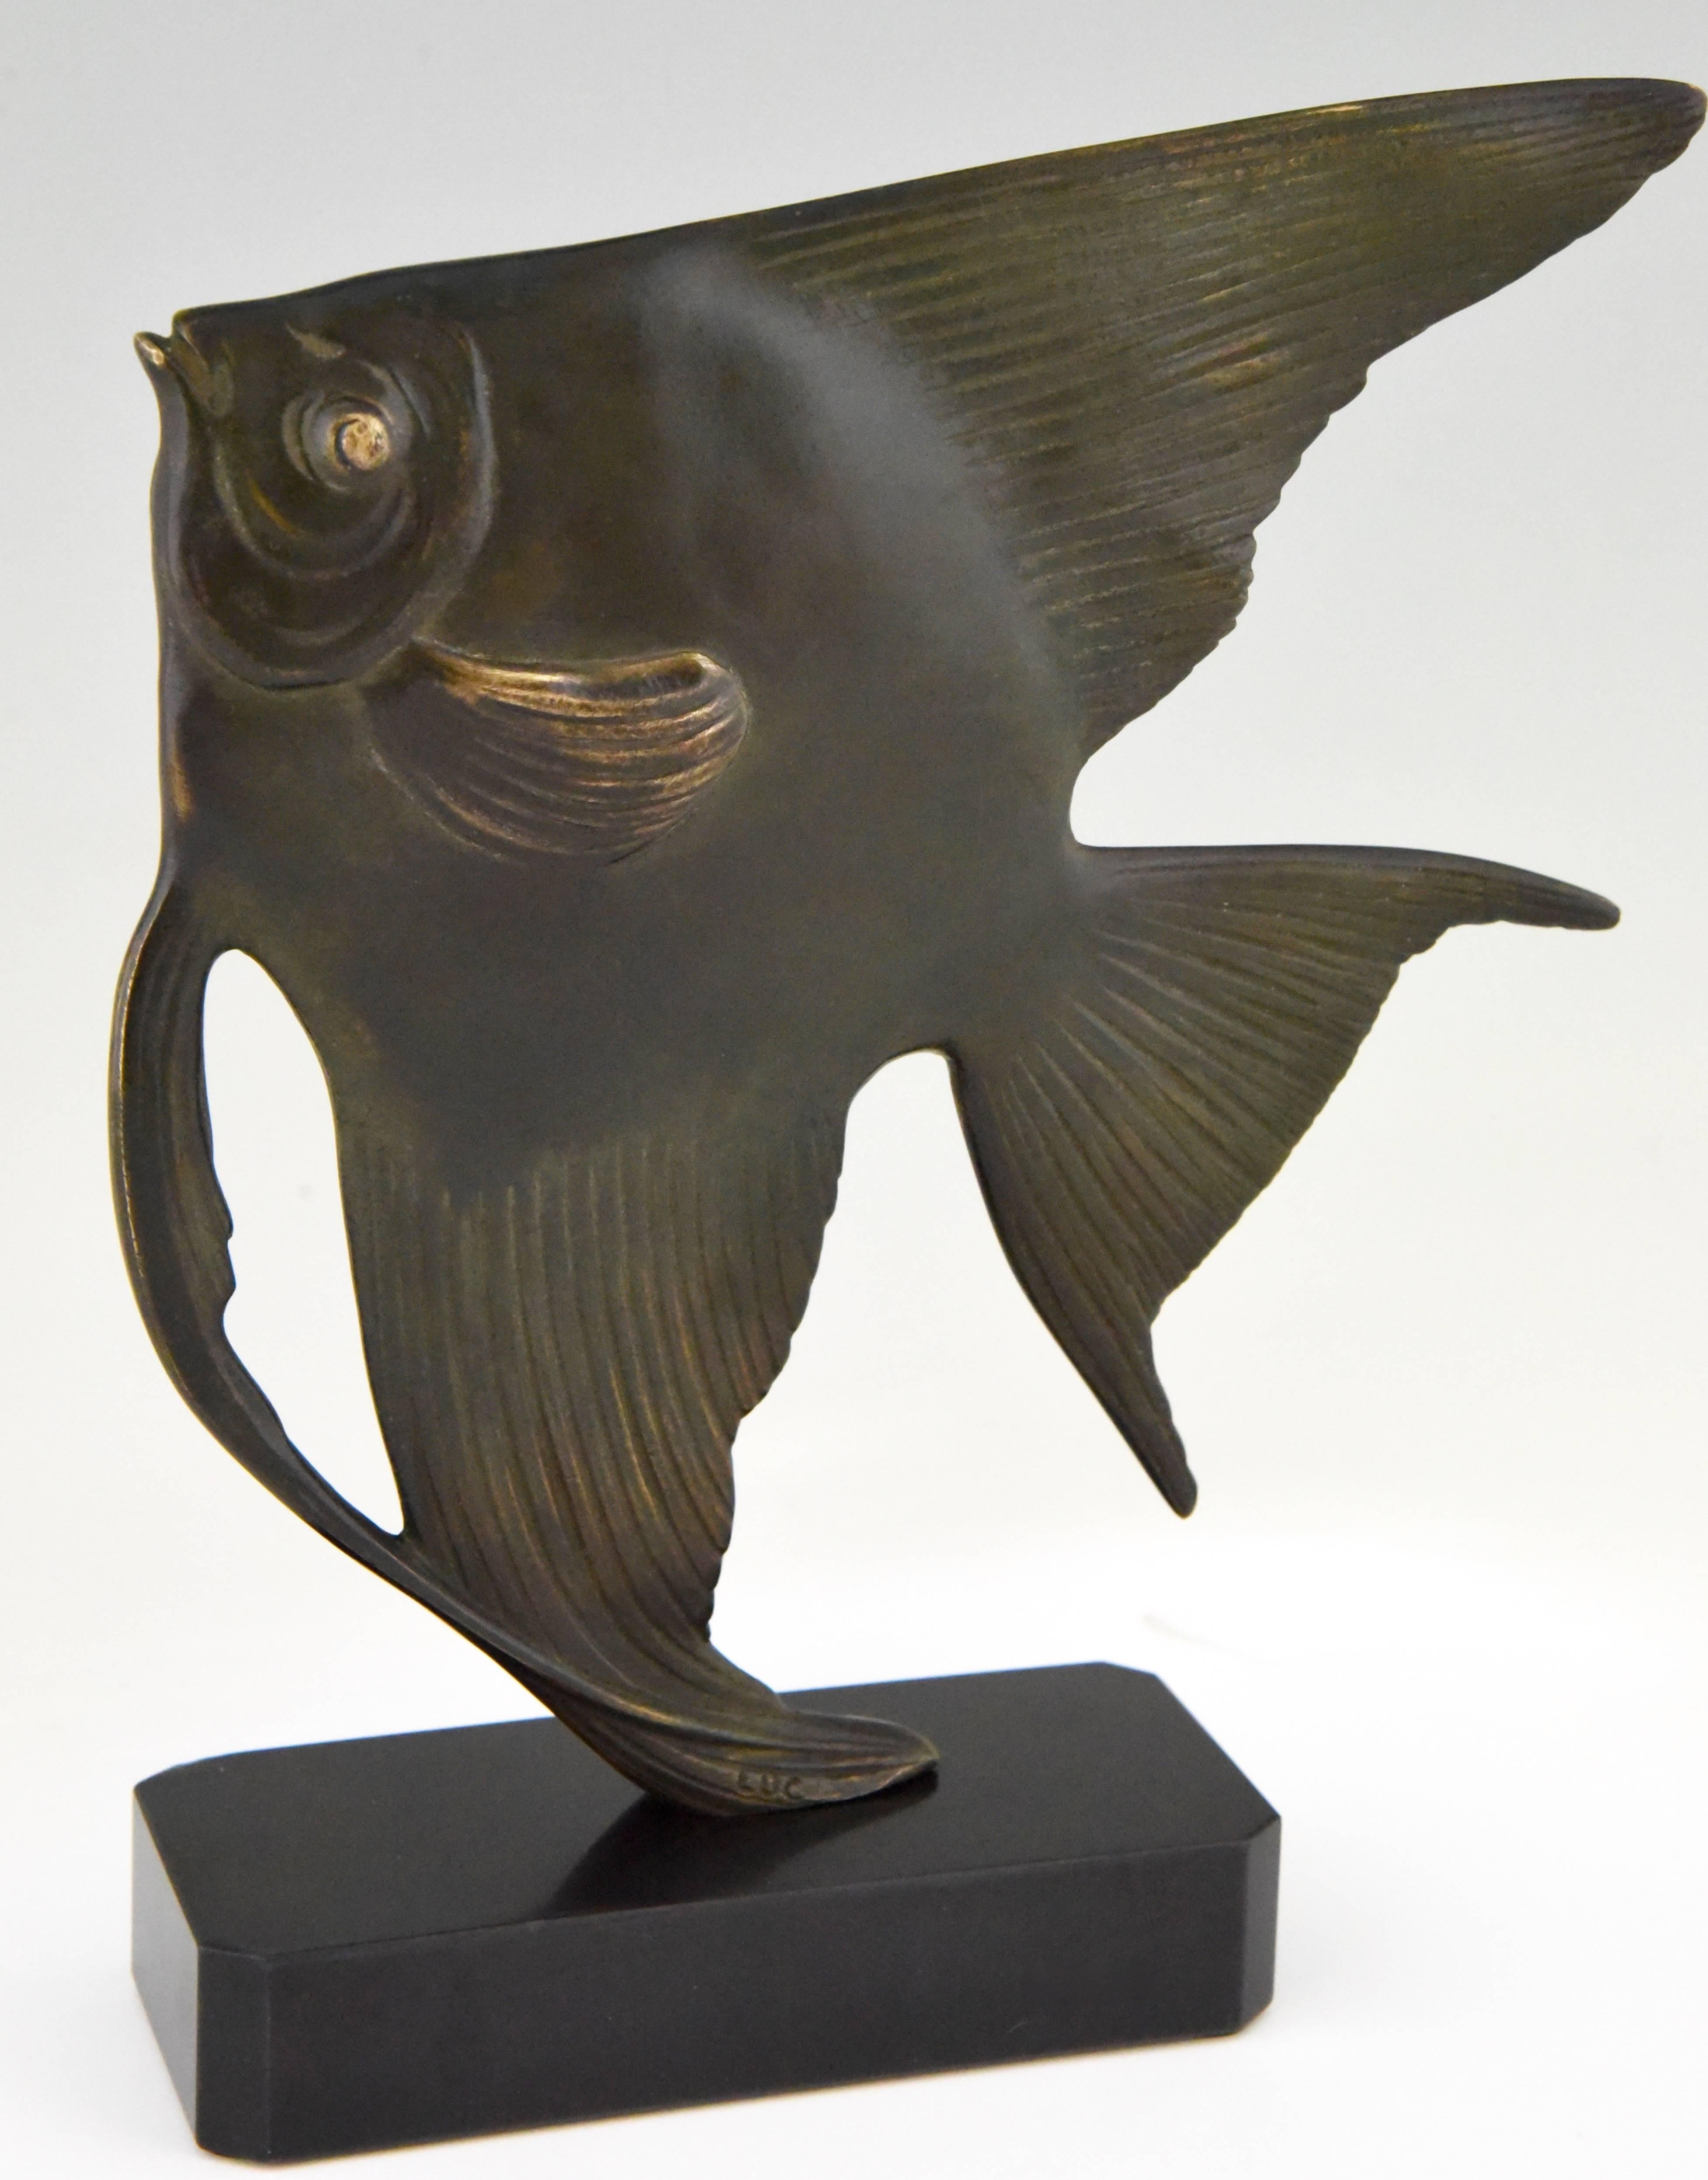 Description: Art Deco bronze sculpture of a fish
Artist/ Maker: Jean Luc.
Signature/ Marks: Luc. Bronze.
Style: Art Deco.
Date: 1930.
Material: Patinated bronze. Belgian black marble base.
Origin: France.
Size:
H 25 cm x L 19.5 cm x W 5.5